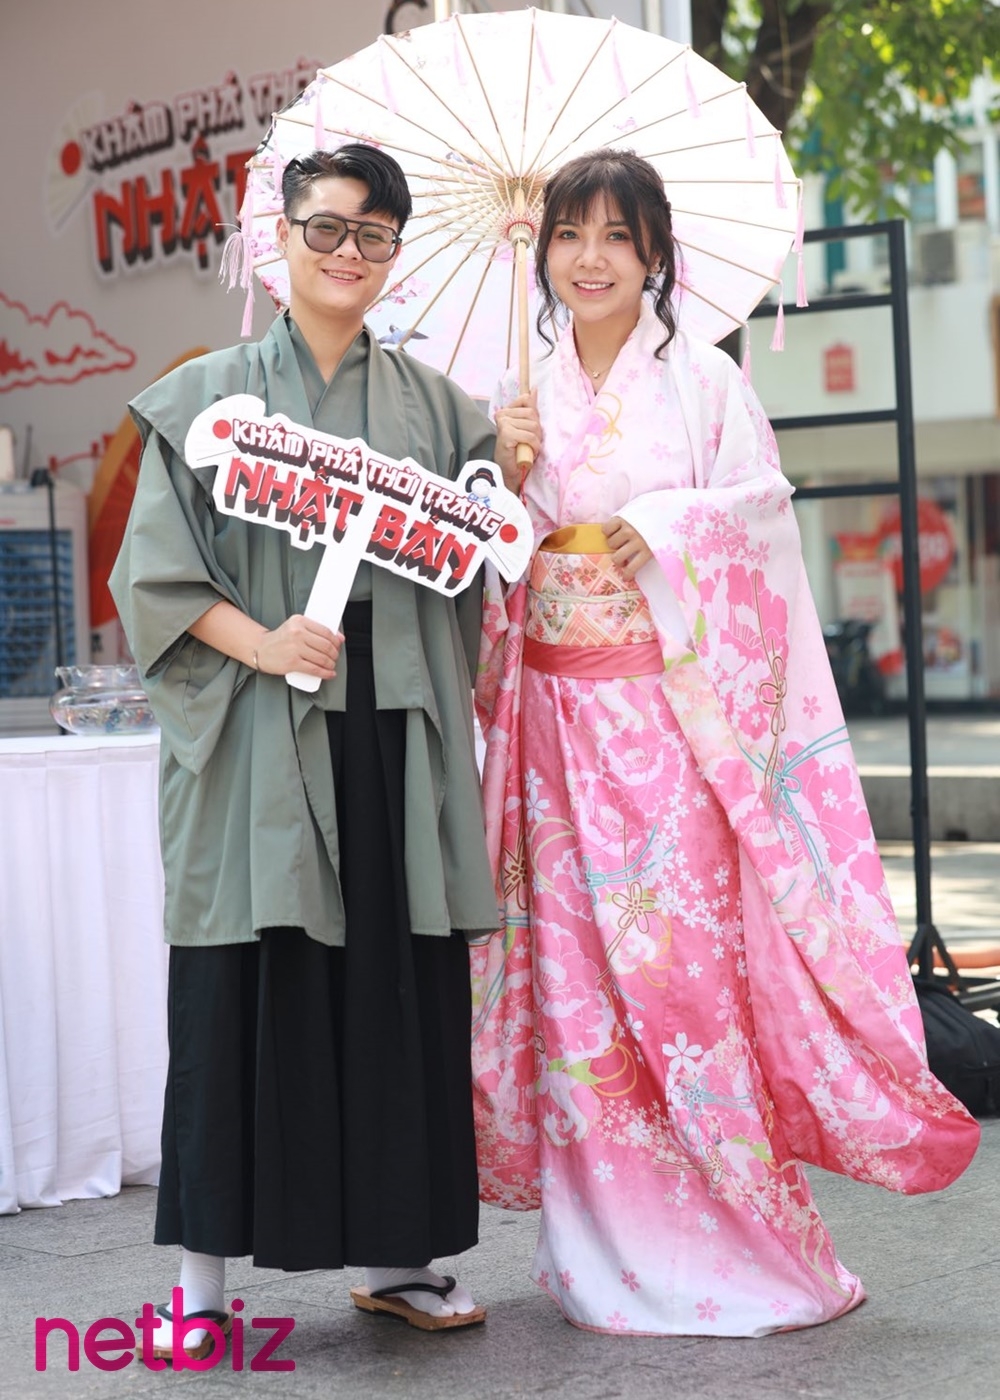 Khám phá thời trang Nhật Bản cùng các hot TikToker Phương Minh, Vy Hoàng tại HOZO Festival